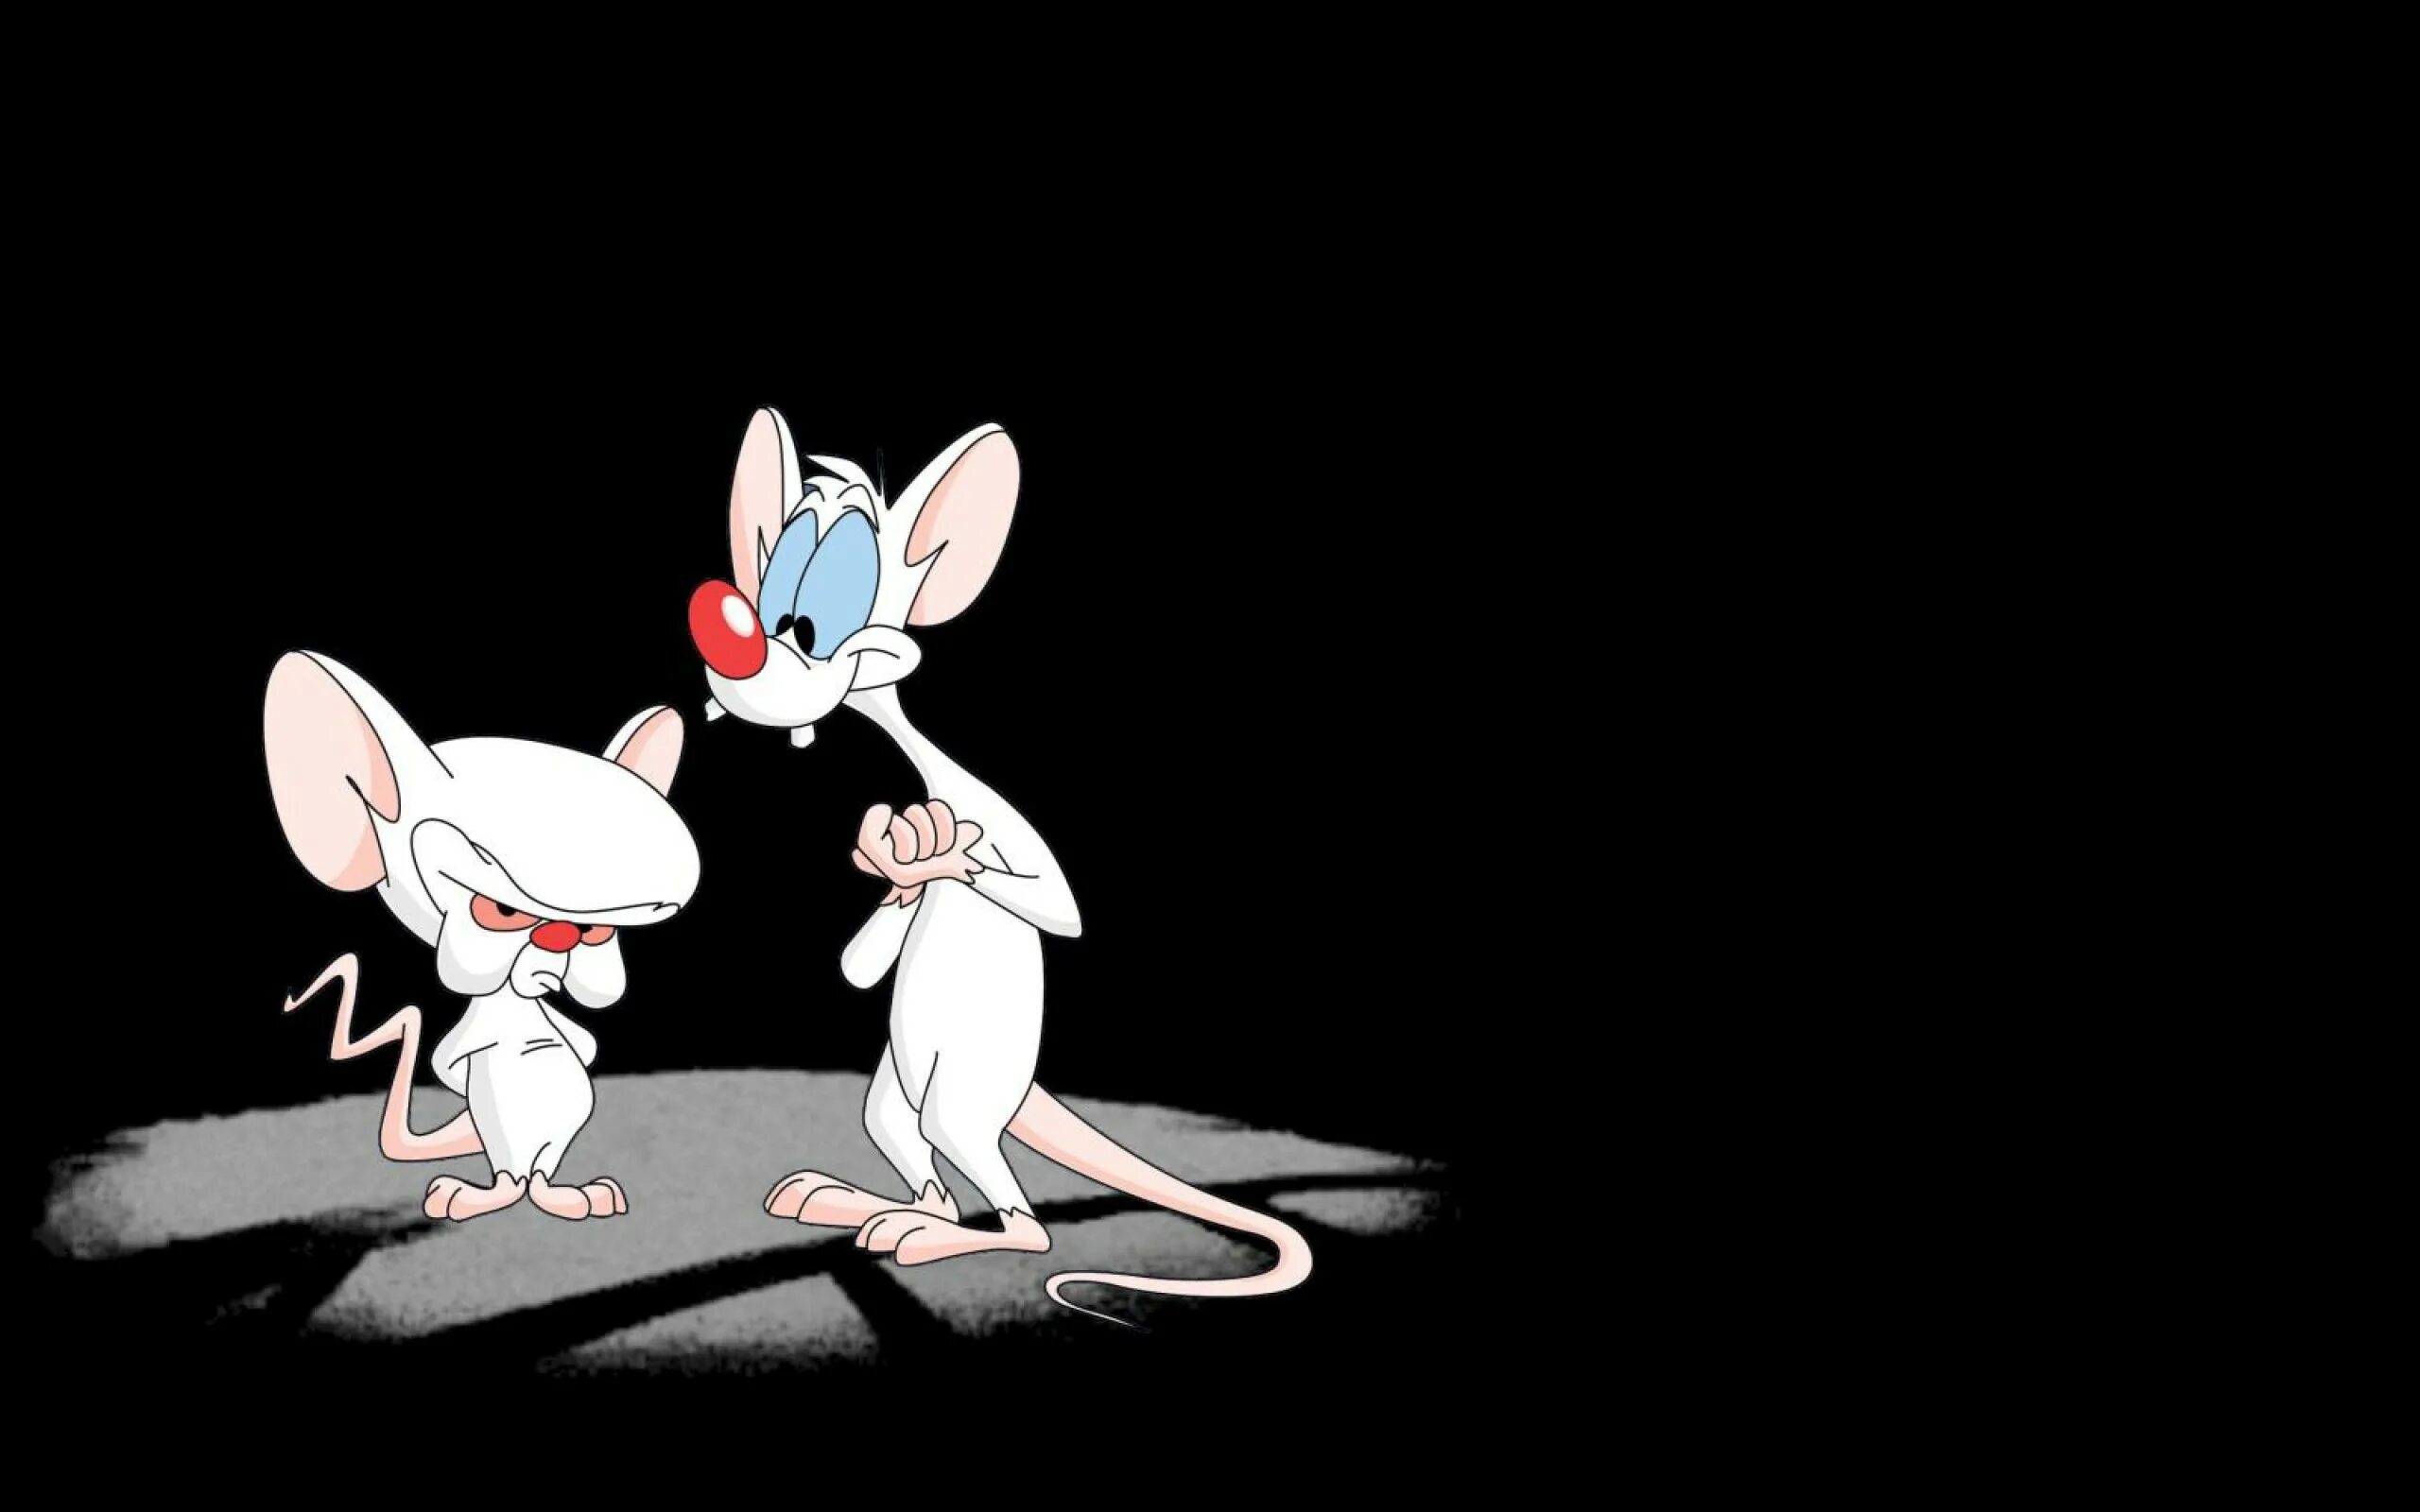 Пинки и Брейн пытаться захватить мир. Мыши захватывают мир.